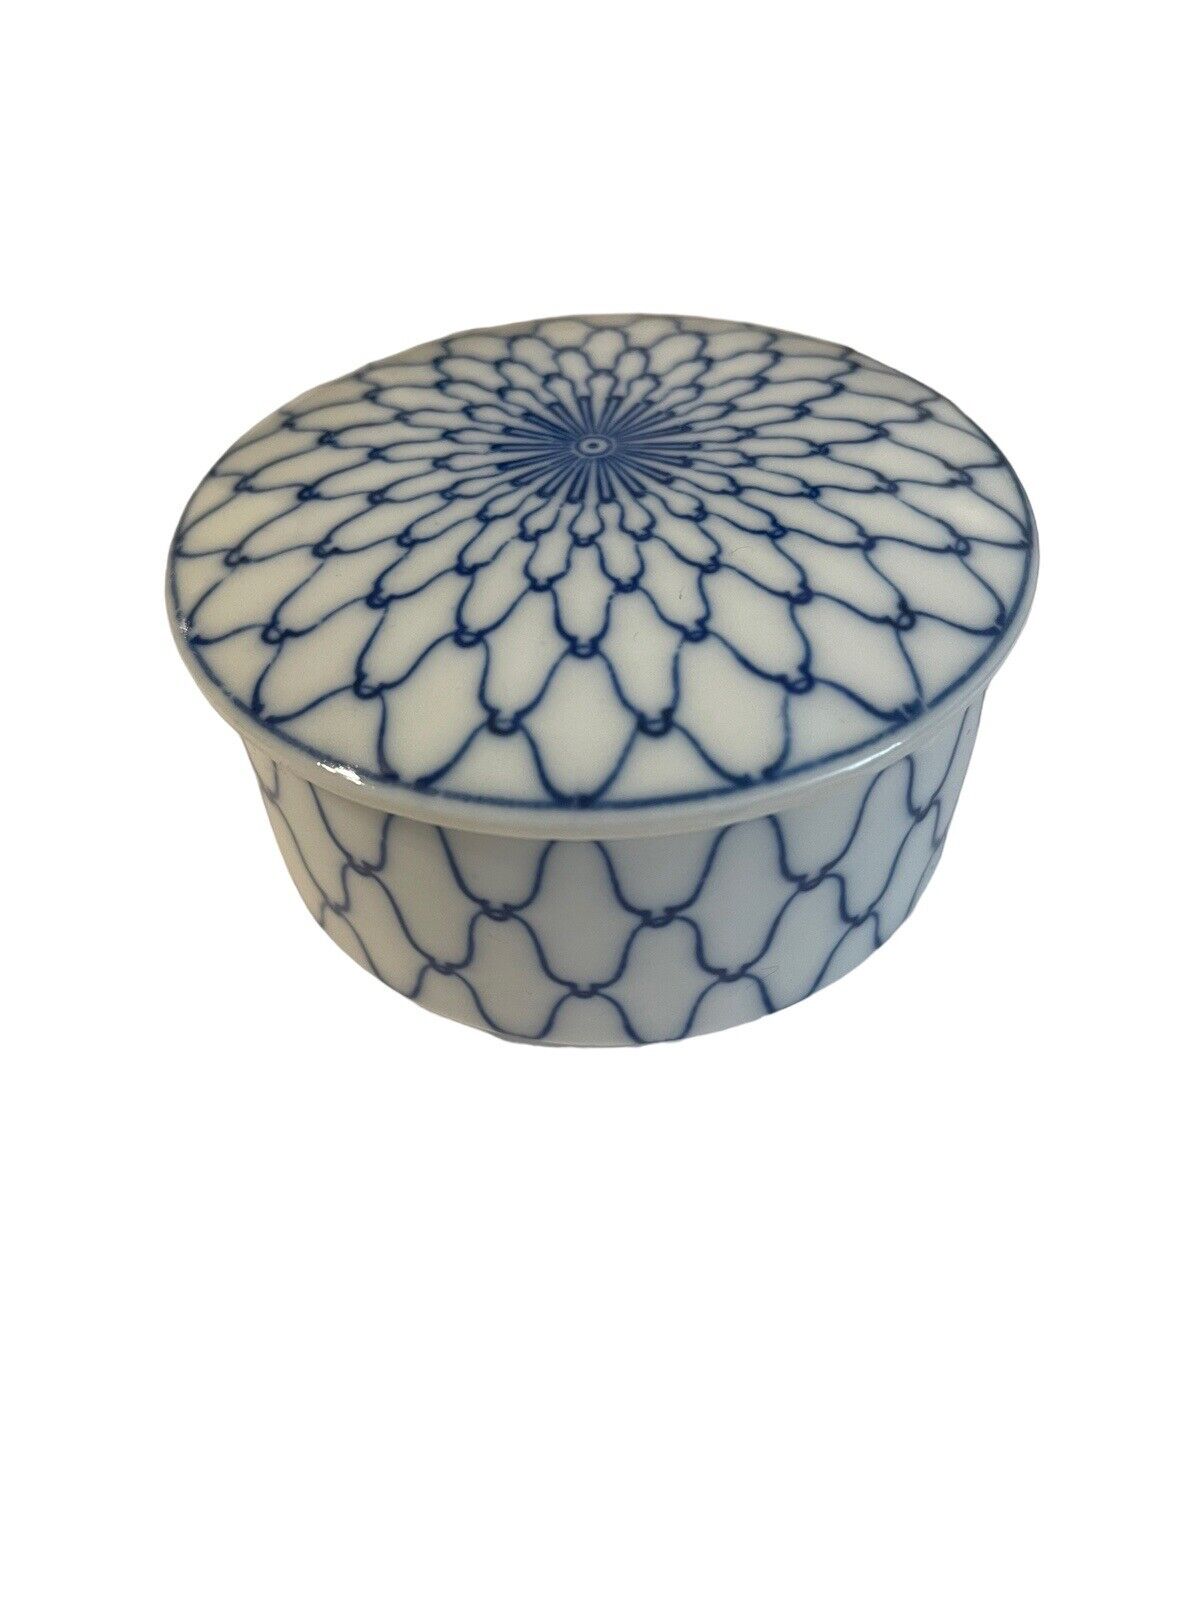 Vtg Takahashi Japanese Asahi Blue Fish Net pattern Trinket Box Dish Bowl w/ Lid